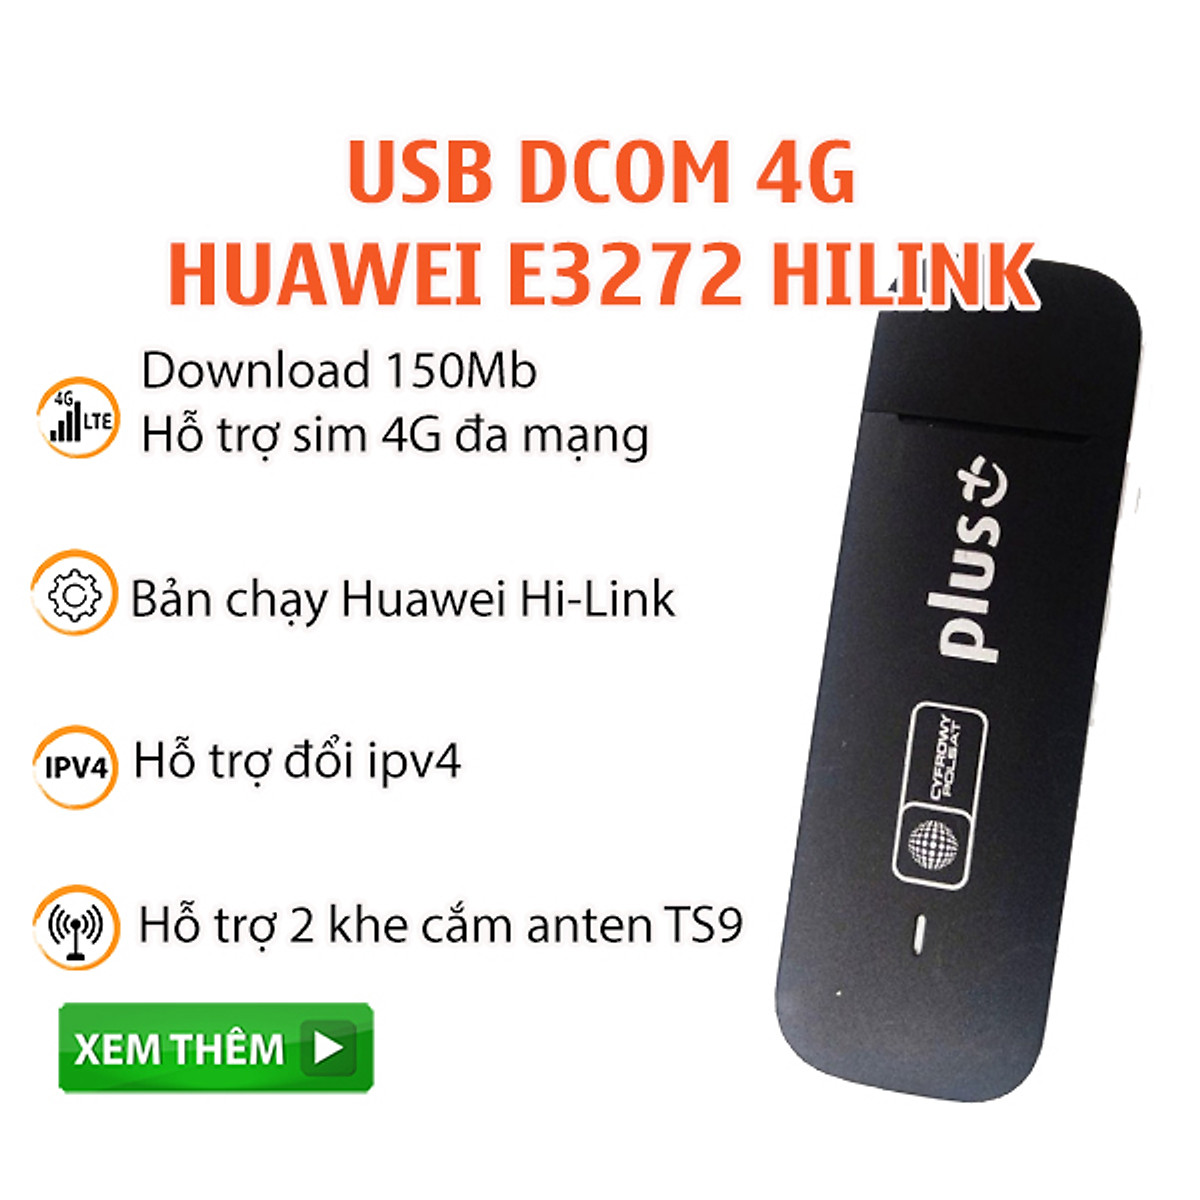 Mua Usb Dcom 4G Huawei E3272 Tốc Độ 150Mb Hỗ Trợ Đổi IP Mạng, Công Nghệ  Hilink Cắm Là Chạy, Màu ngẫu nhiên, Hàng Chính Hãng | Tiki